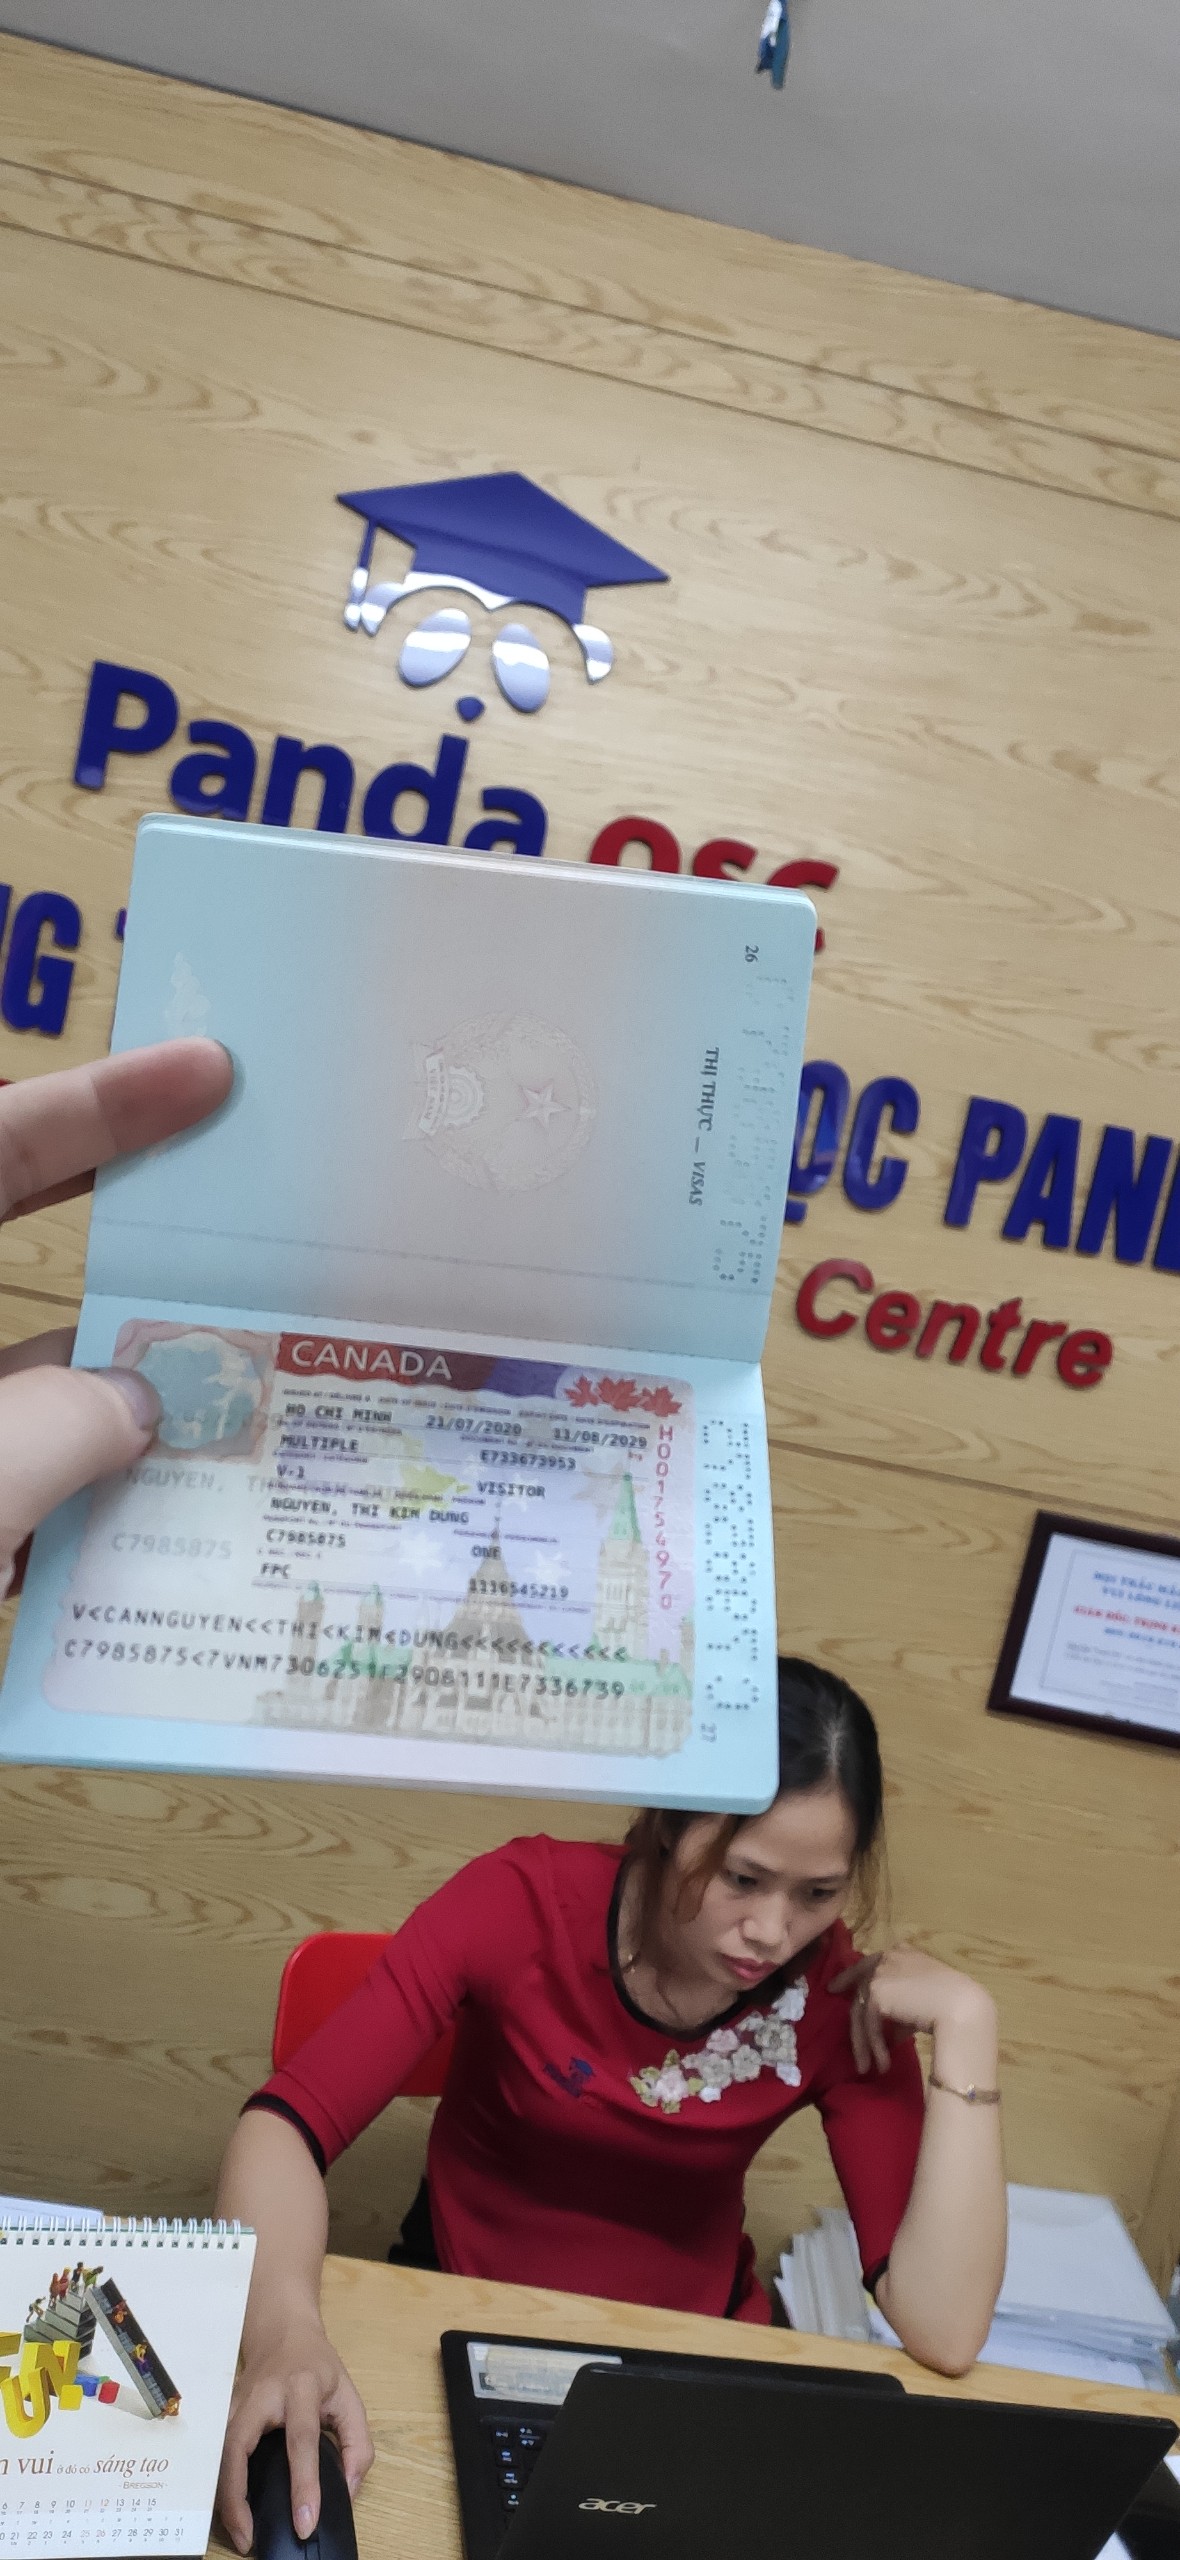 Chúc mừng chị Nguyễn Thị Kim Dung đã đạt được Visa thăm thân Canada với thời hạn 9 năm